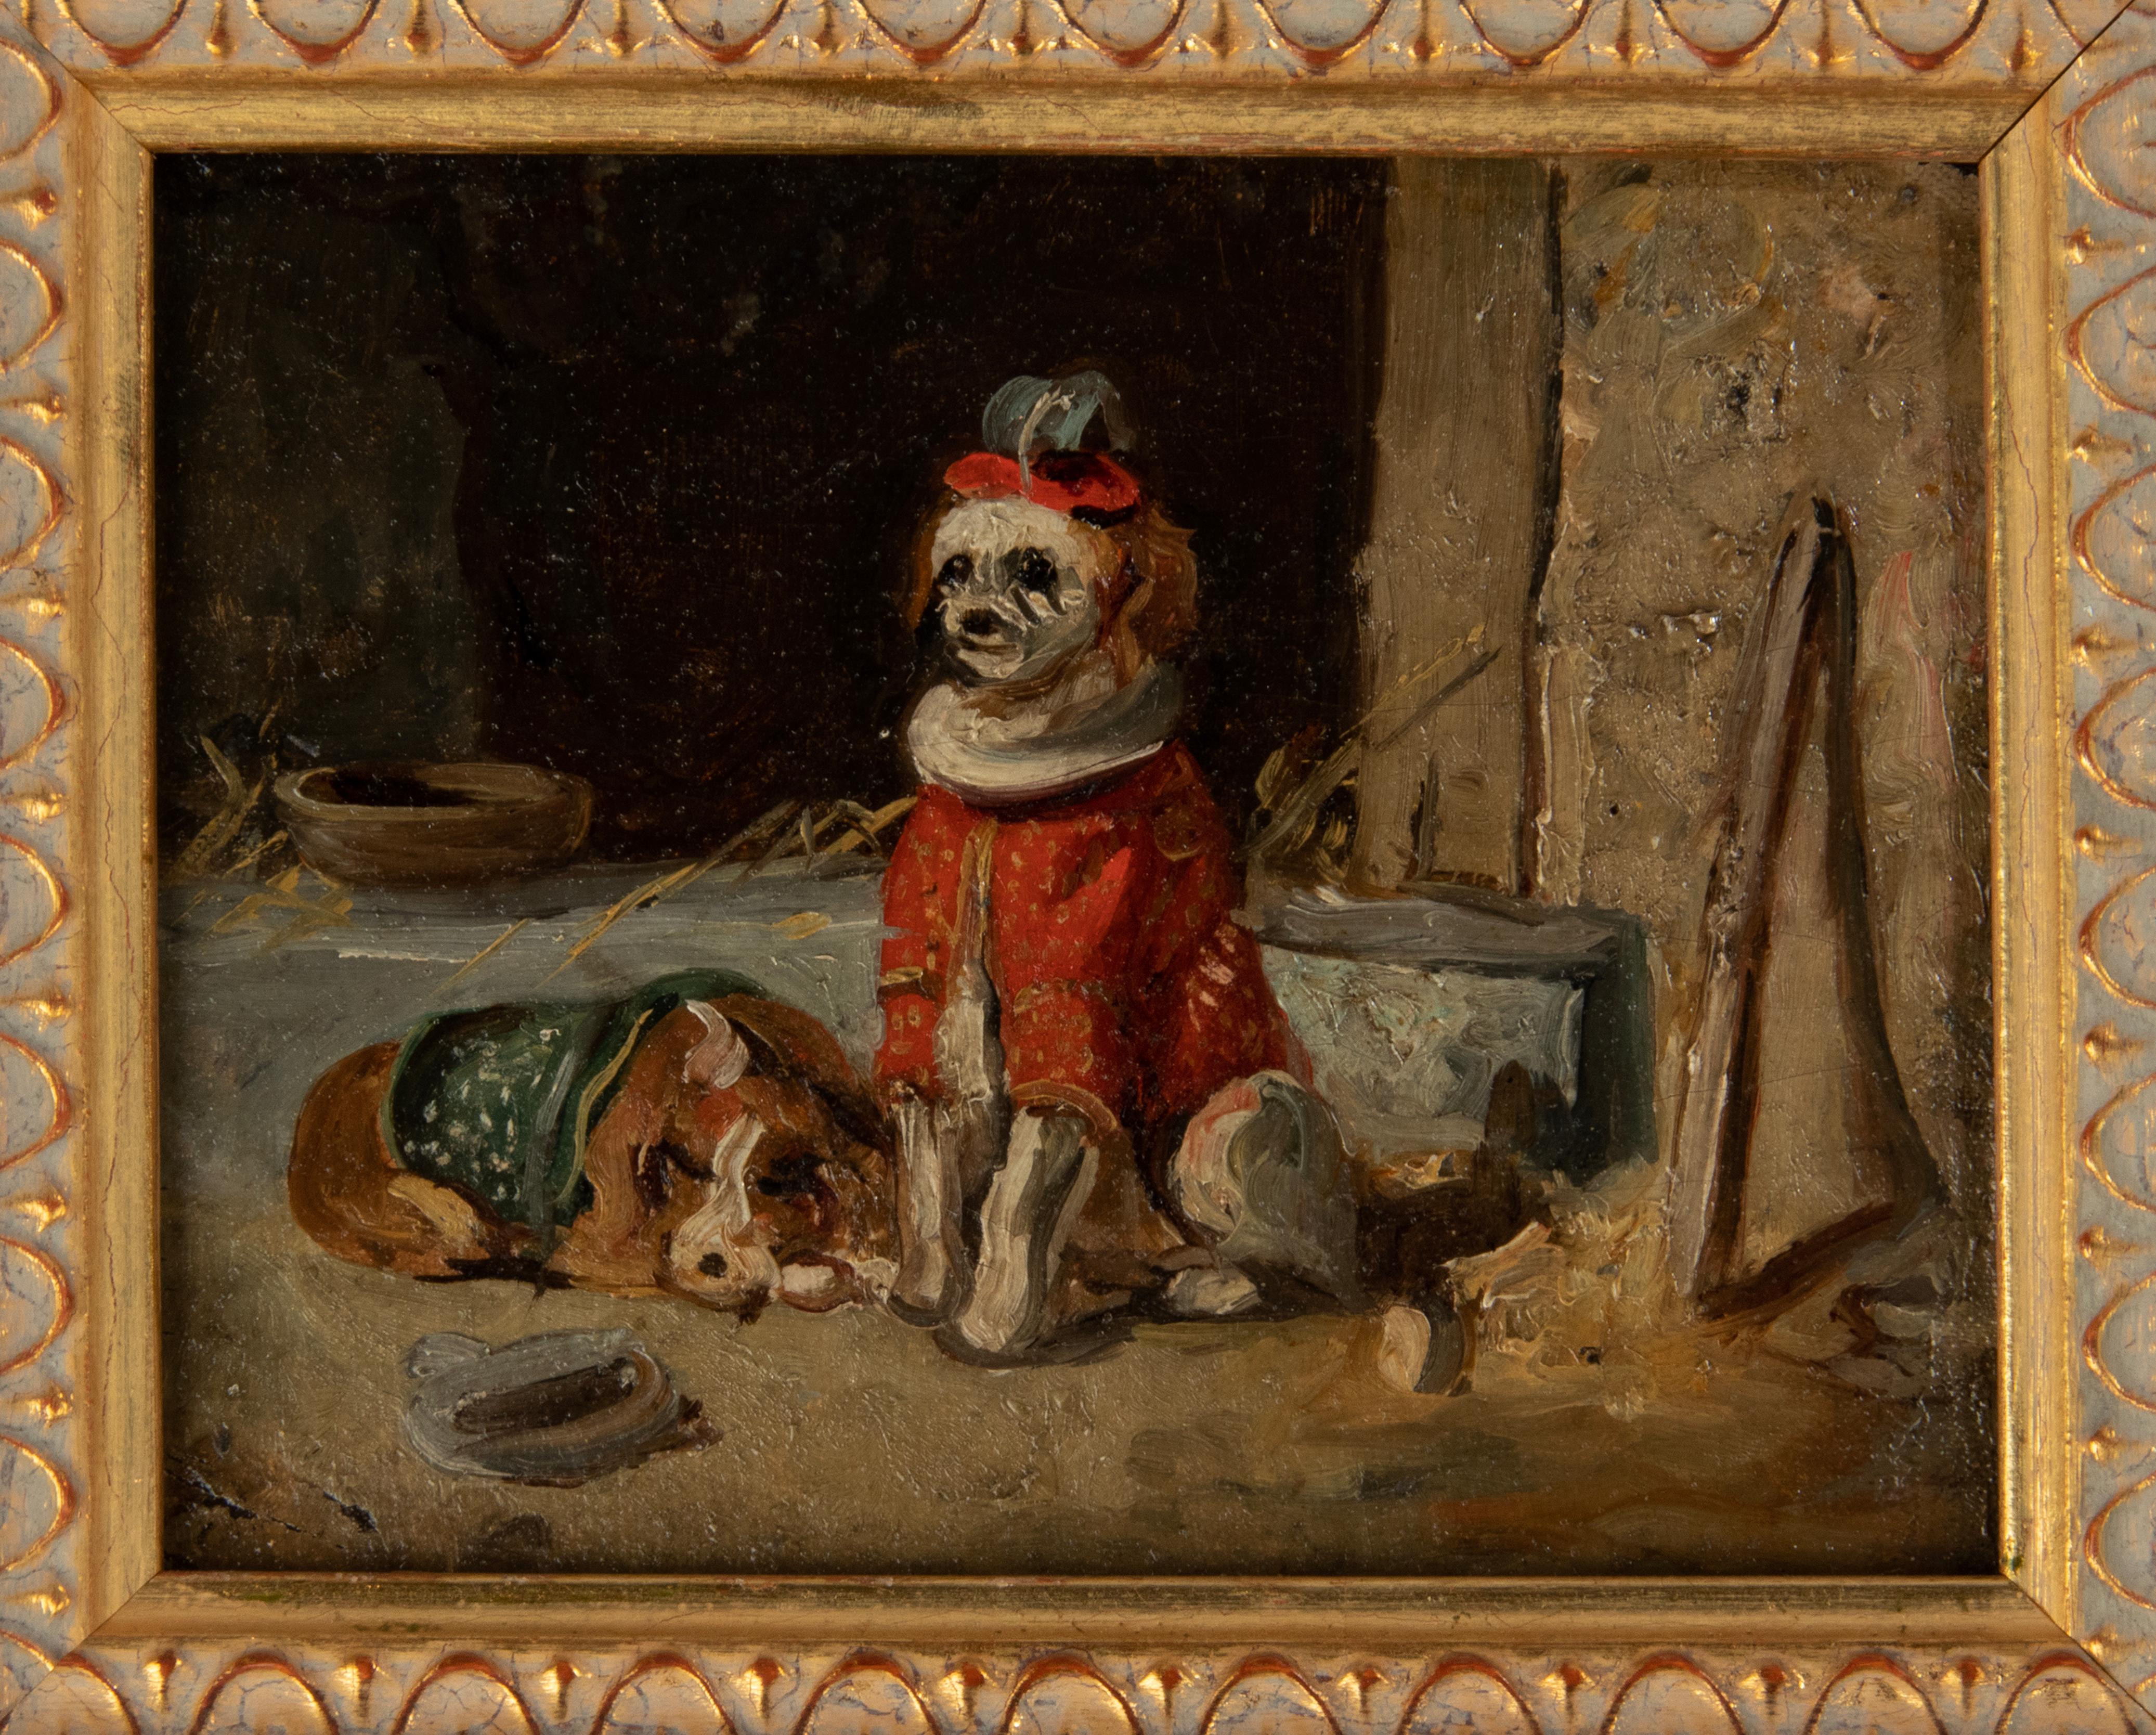 Ein süßes kleines Gemälde, das zwei verkleidete Zirkushunde darstellt. Die Hunde sind vor einem nüchternen Hintergrund gemalt.
Das Gemälde ist in Öl auf Tafel gemalt und stammt aus der Zeit um 1900. Vermutlich belgischer oder französischer